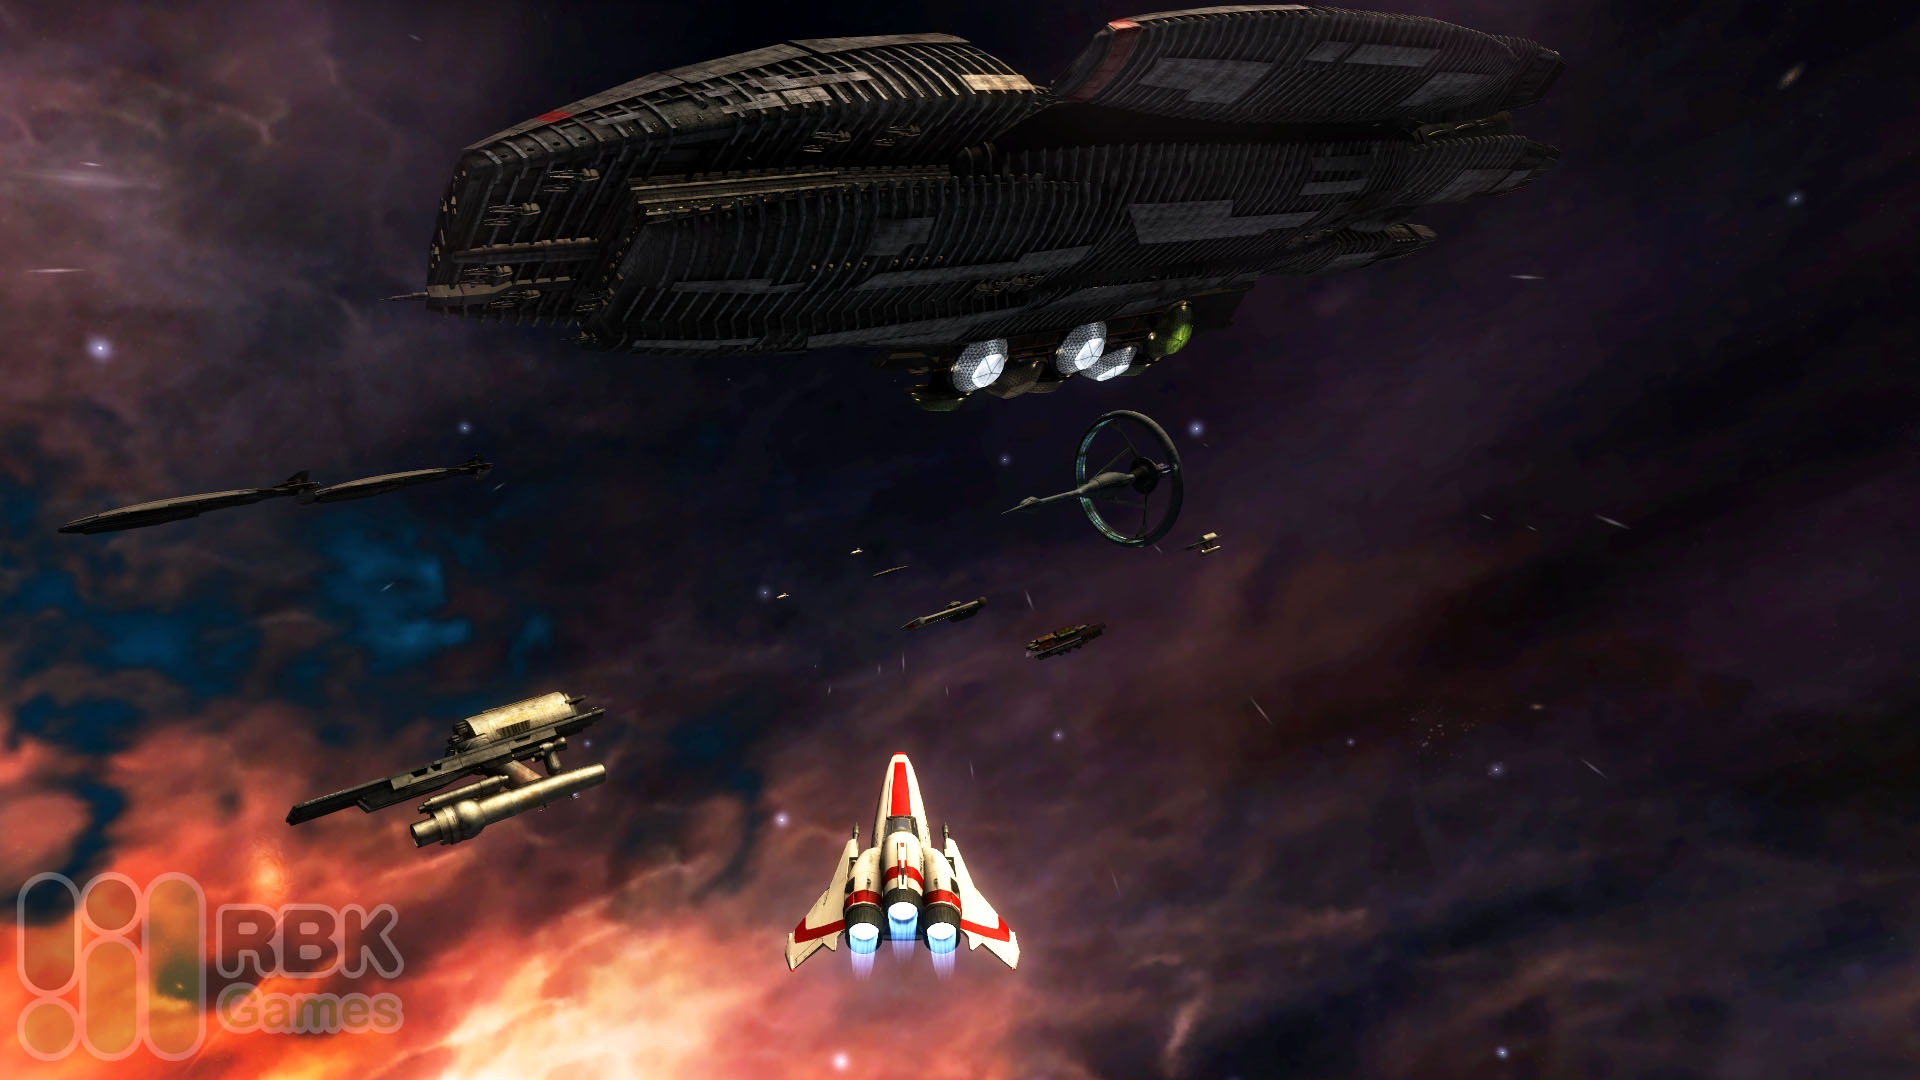 Осваиваем управление истребителем и любуемся пейзажами в Battlestar Galactica Online